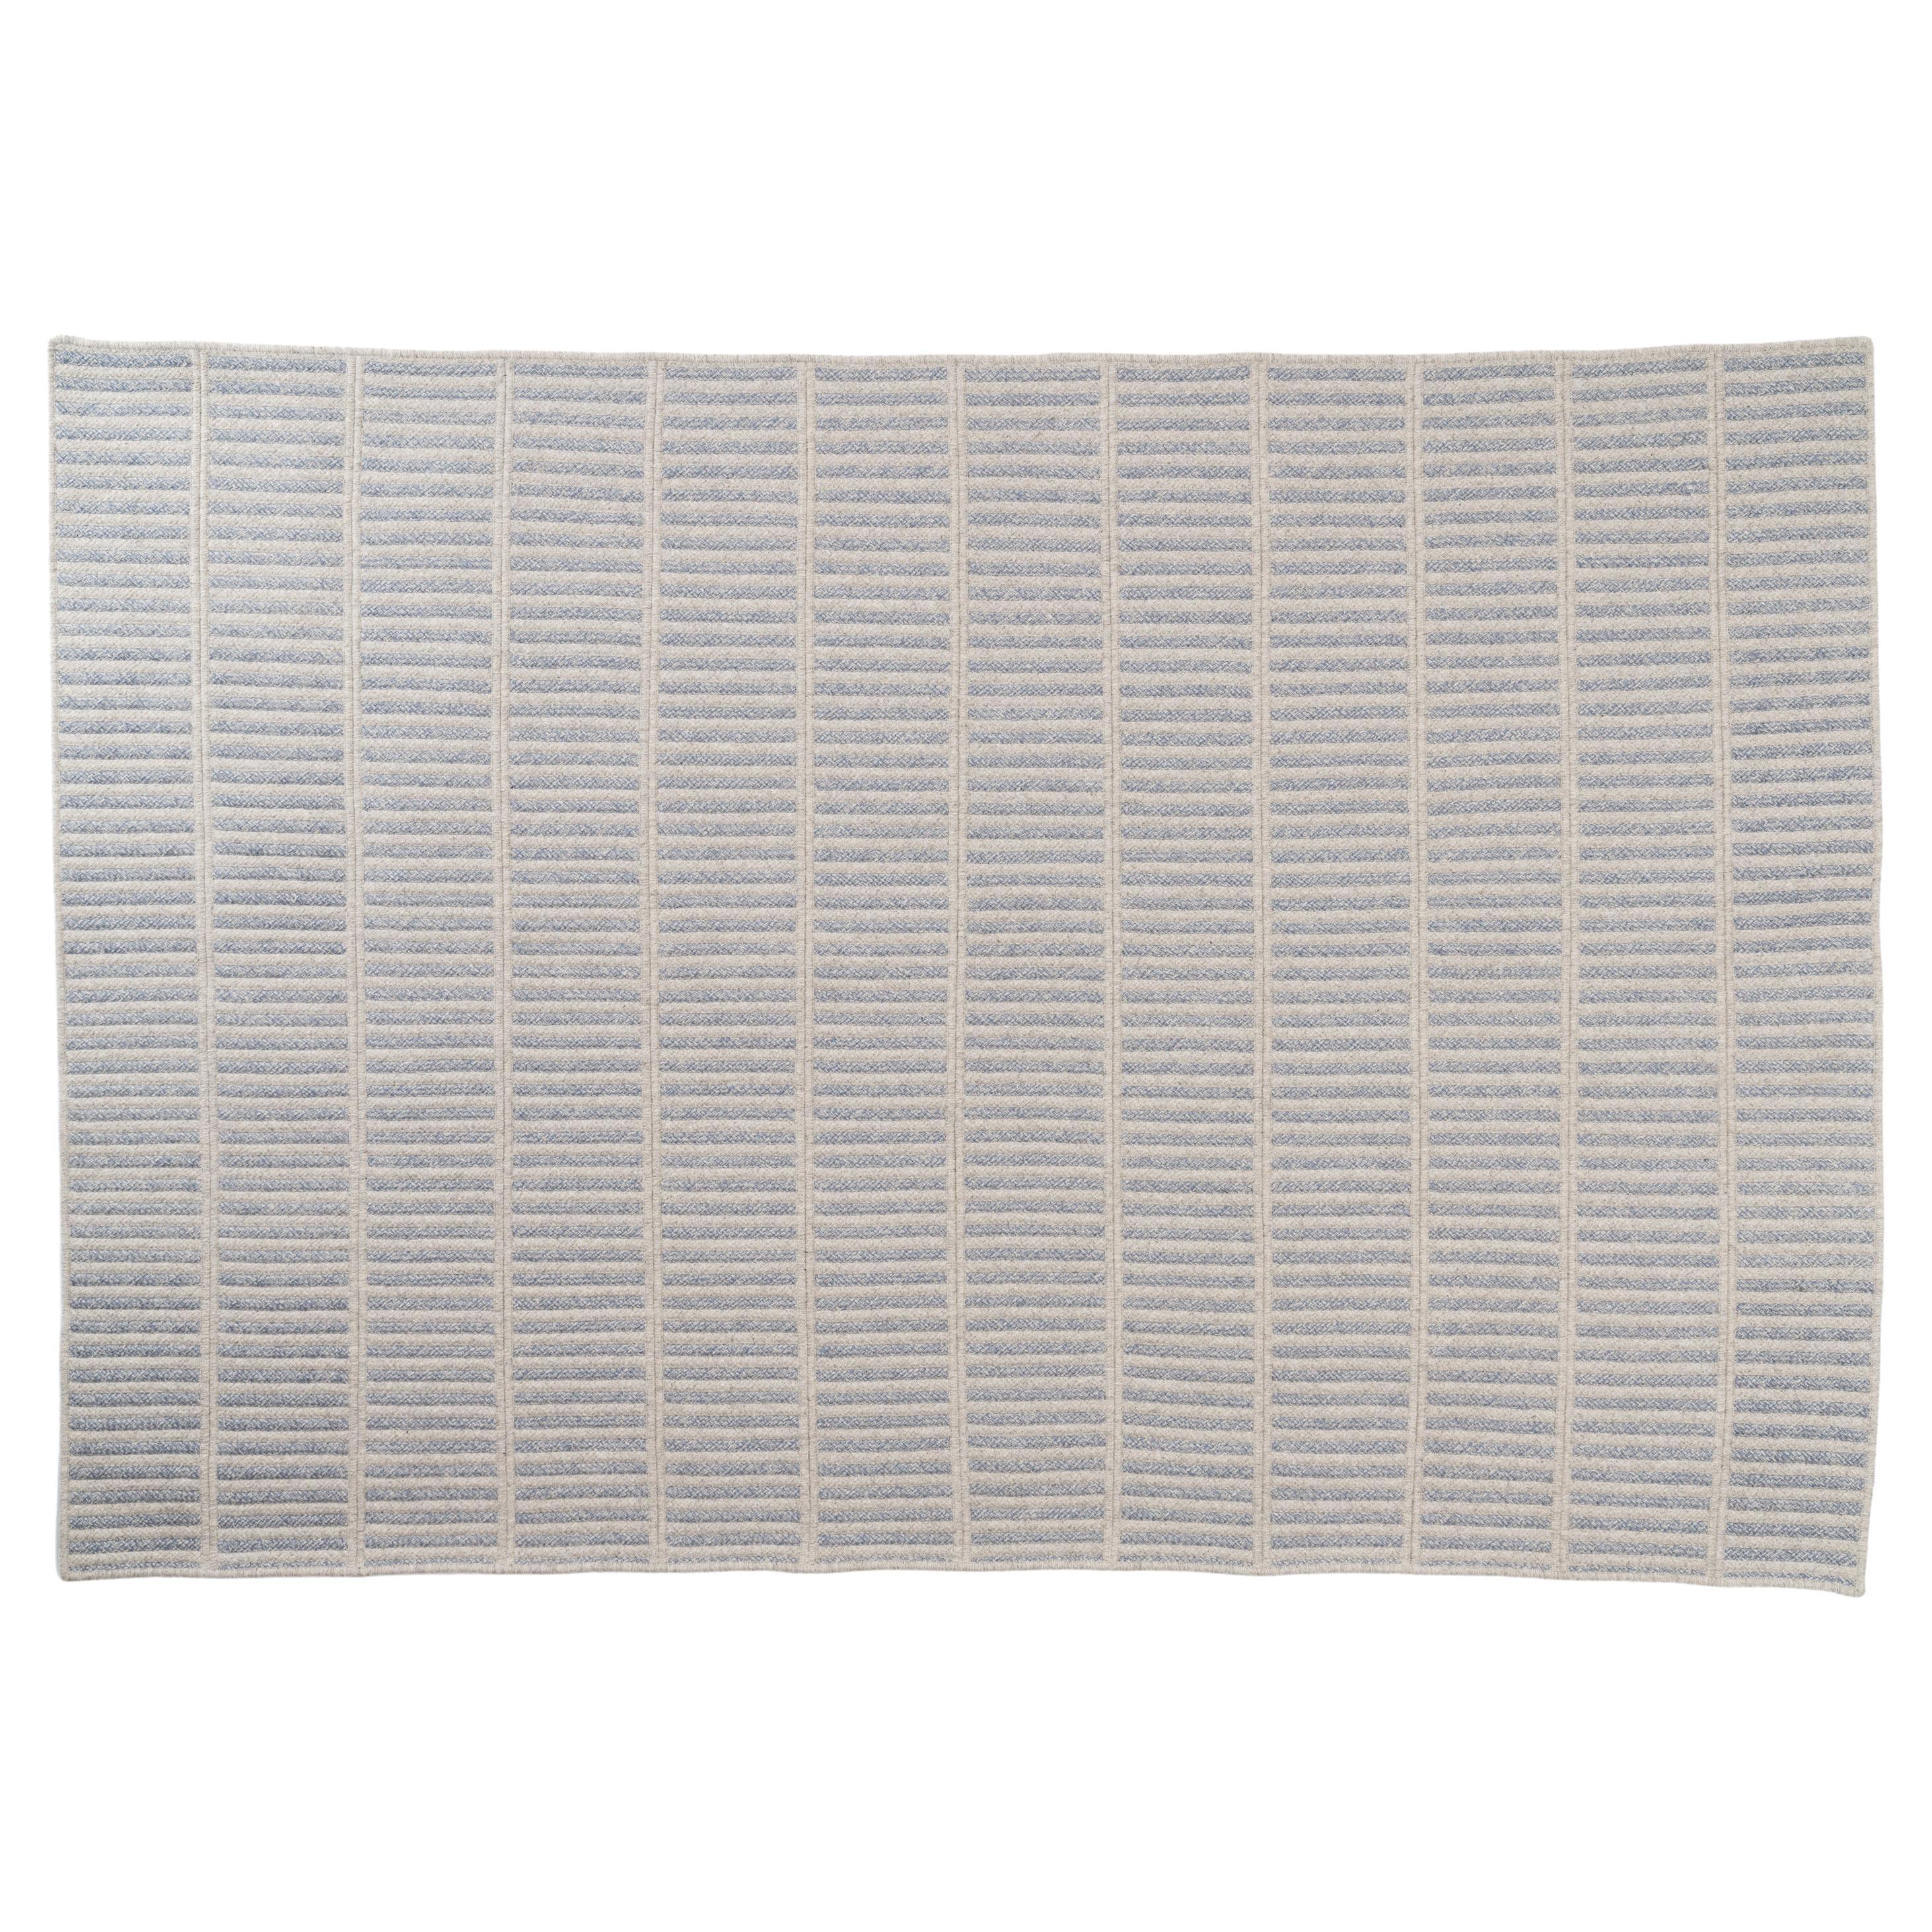 Thayer Design Studio, tapis empilable en laine naturelle, gris clair et bleu acier, 6' x 9'